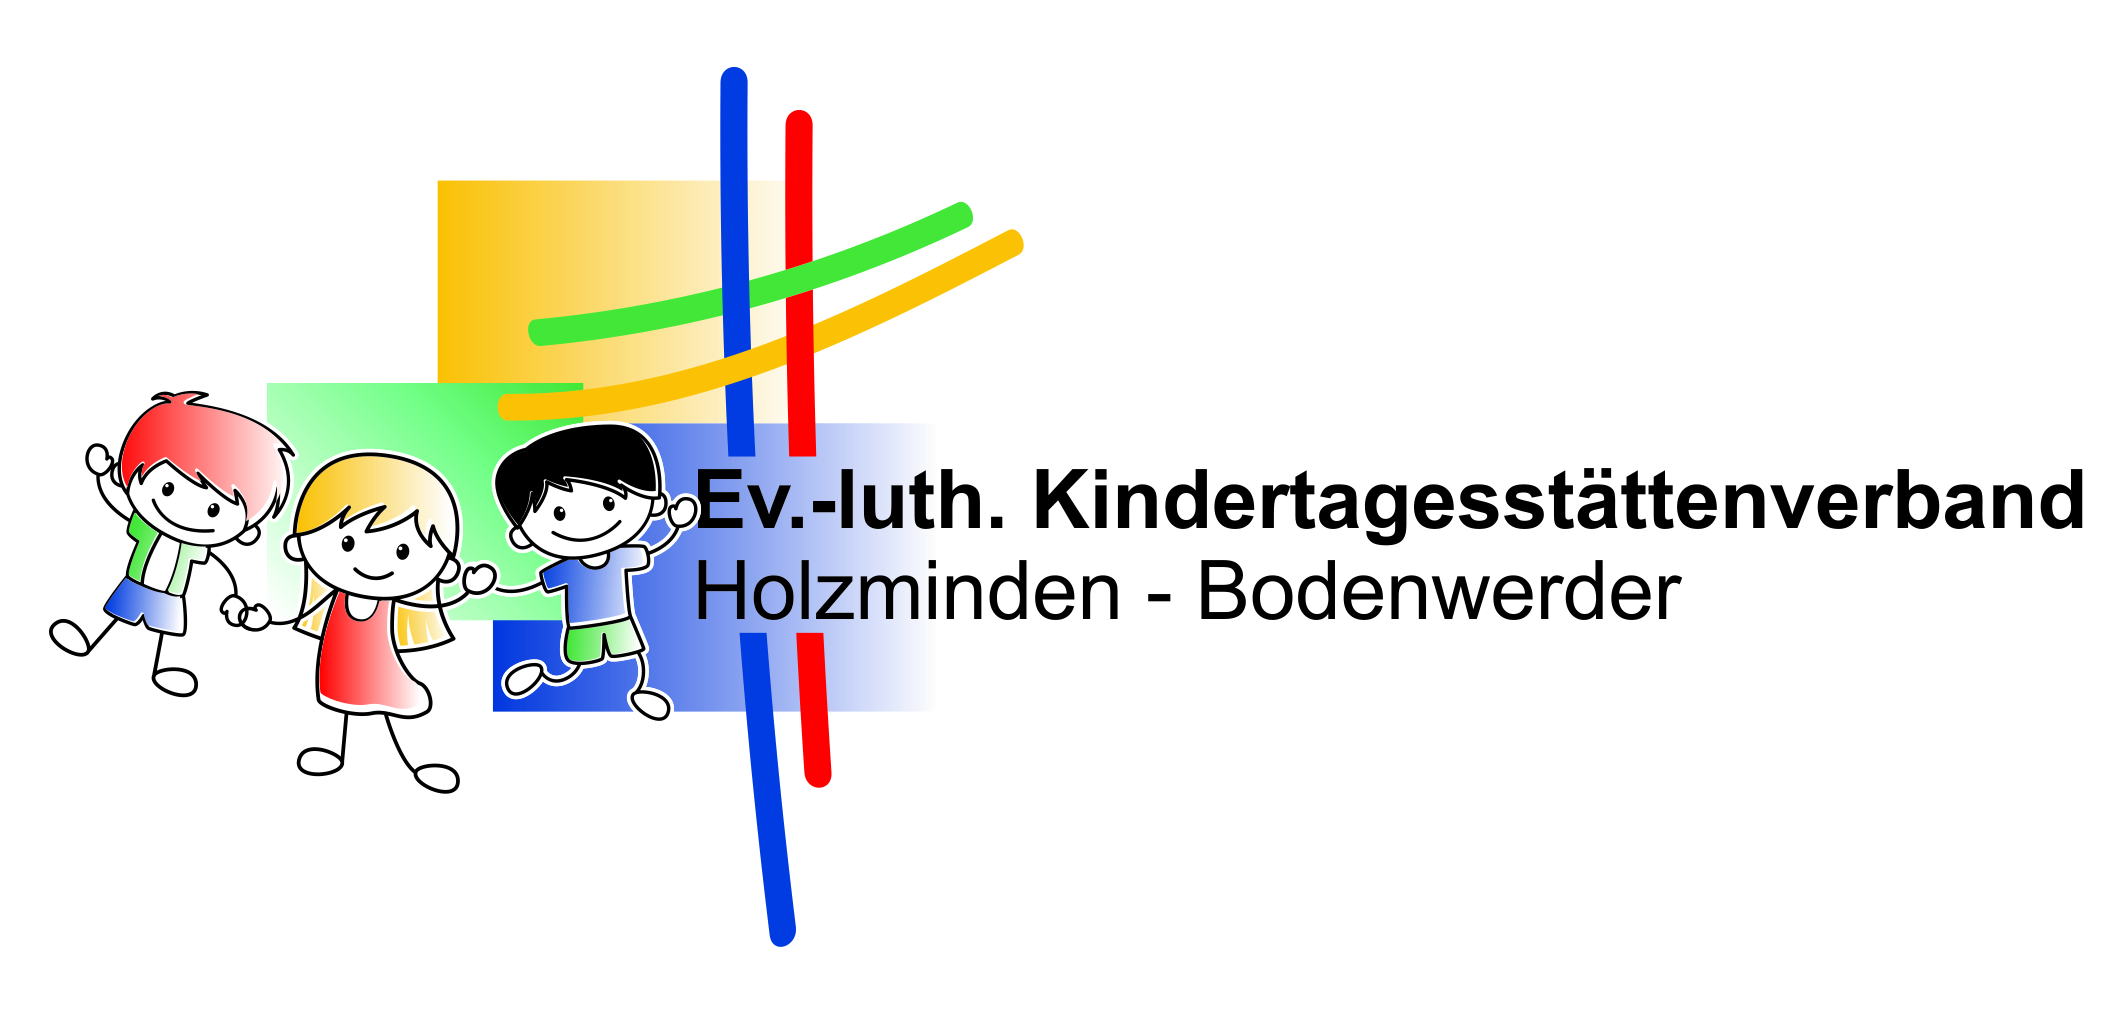 Evang.-luth. Kindertagesstättenverband Holzminden-Bodenwerder